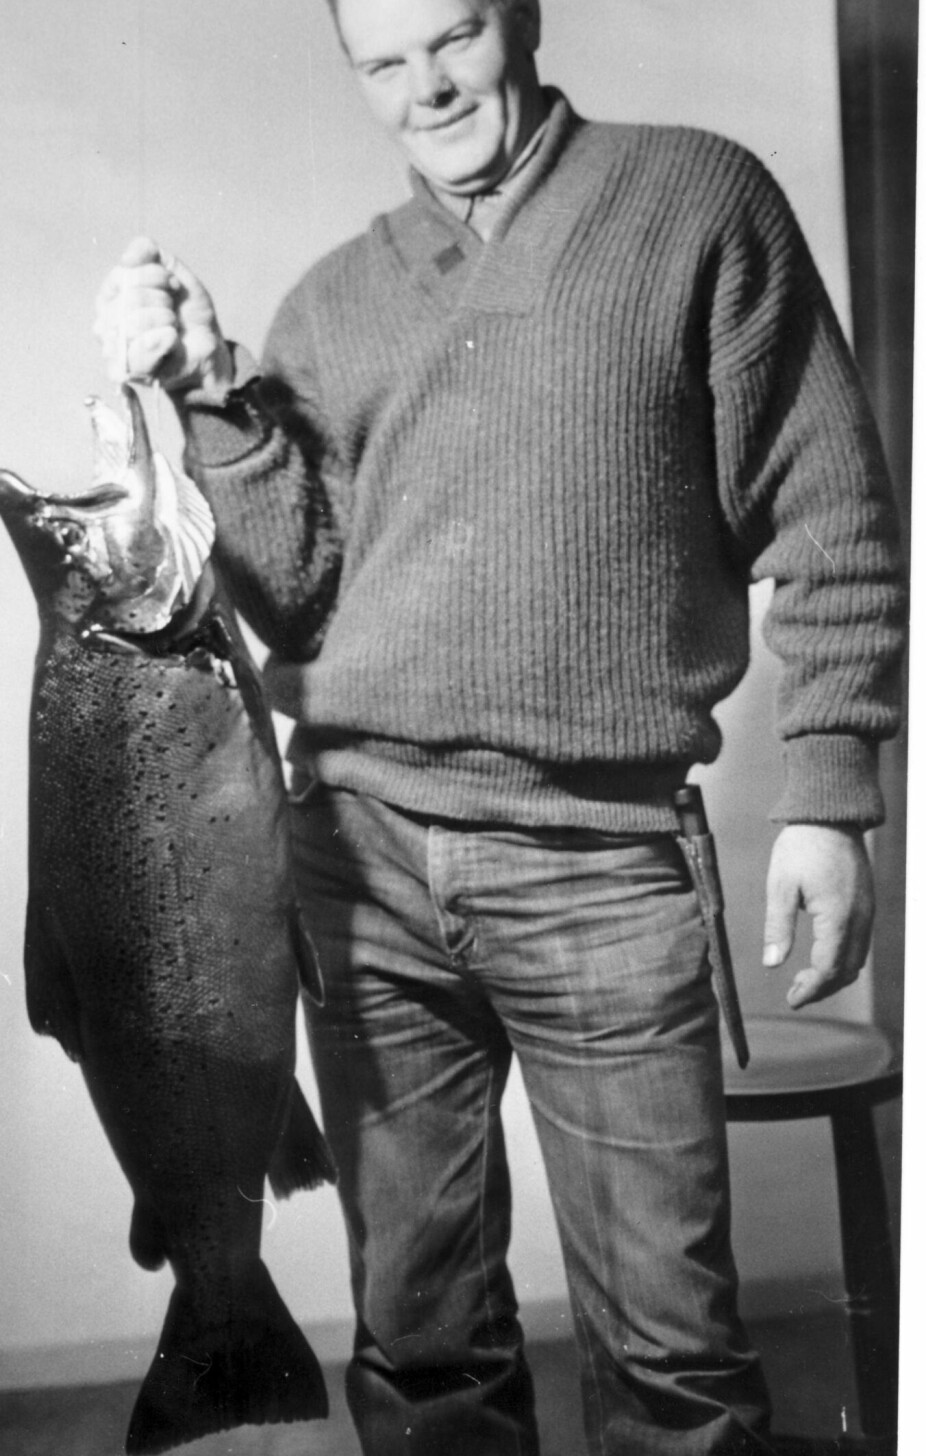 REKORDØRRET: Denne ørreten ble tatt av Robert Torp i 1981 og var over 15 kilo. At denne rekorden blir slått i nærmeste fremtid er relativt usannsynlig.